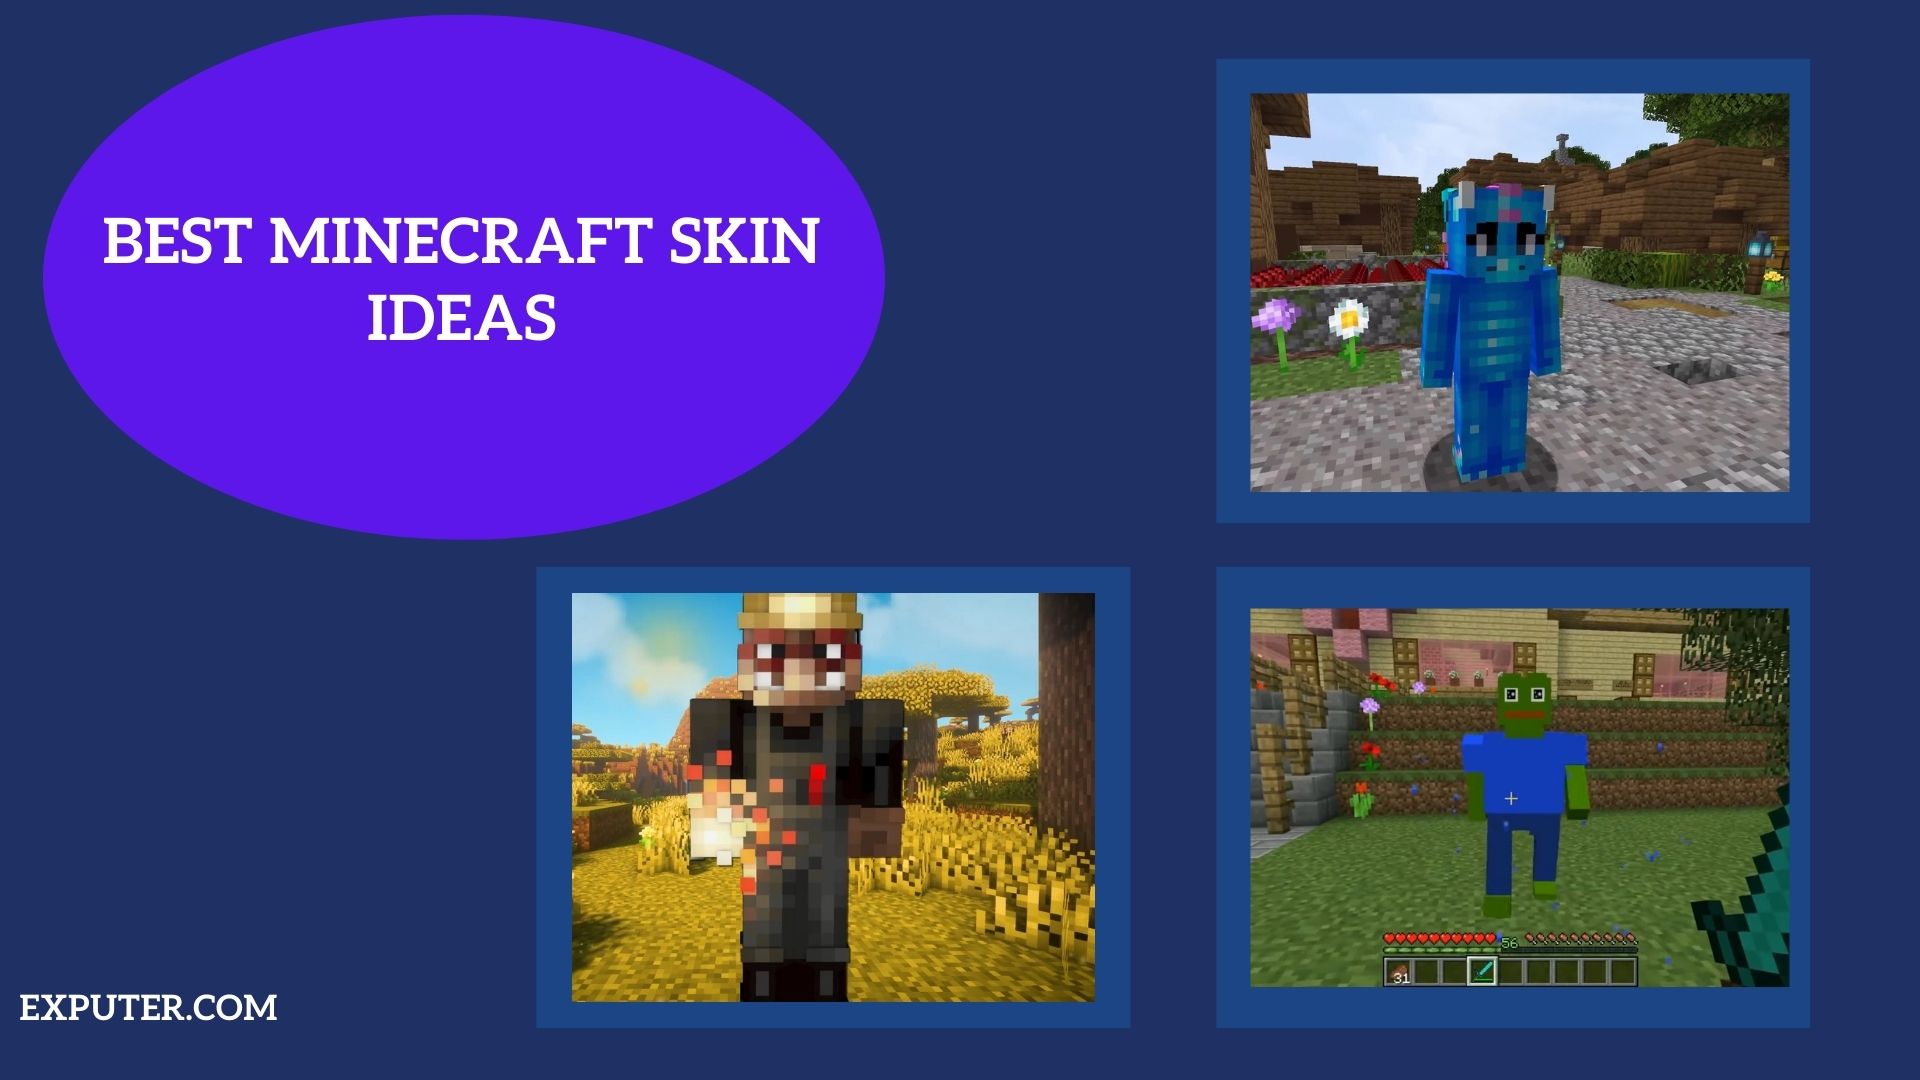 4 Ways to Change Your Minecraft Skin